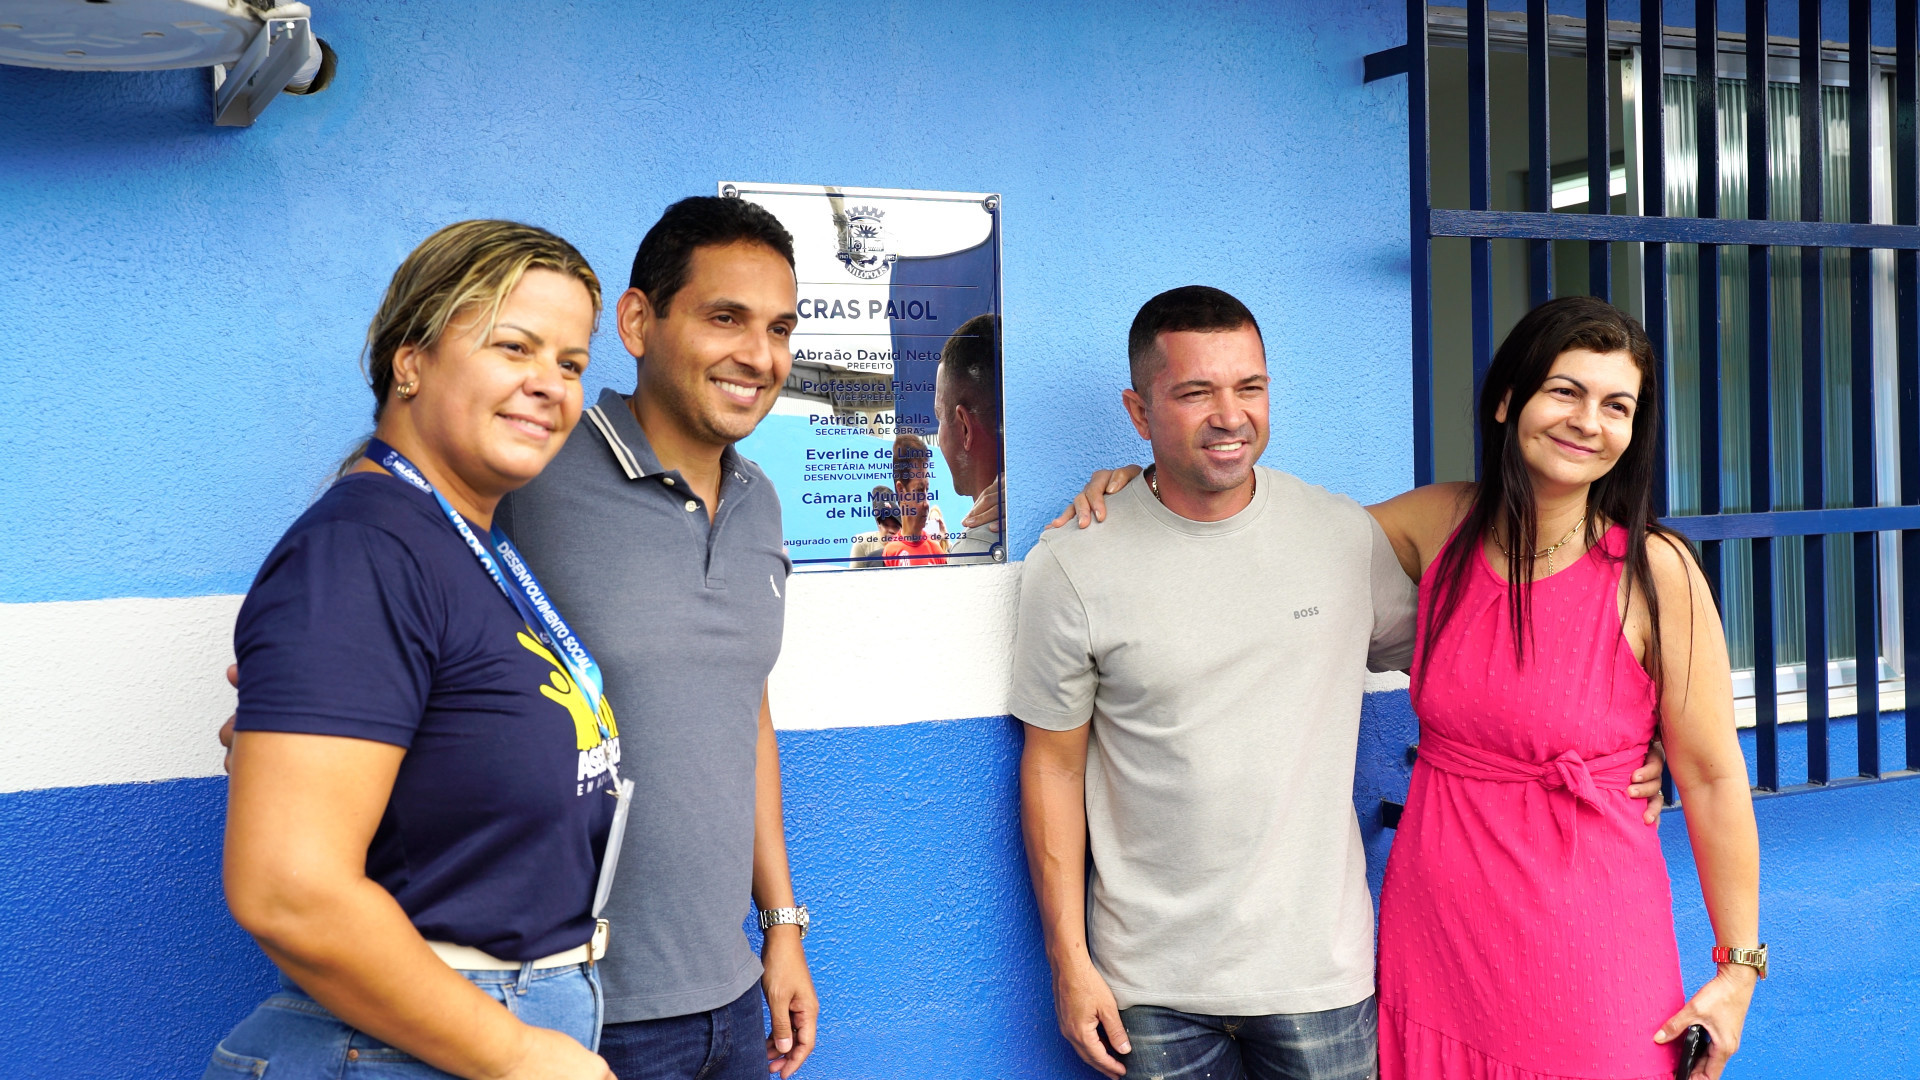 O CRAS Paiol foi inaugurado e atualmente há mais de 7 mil famílias cadastradas - Divulgação / PMN